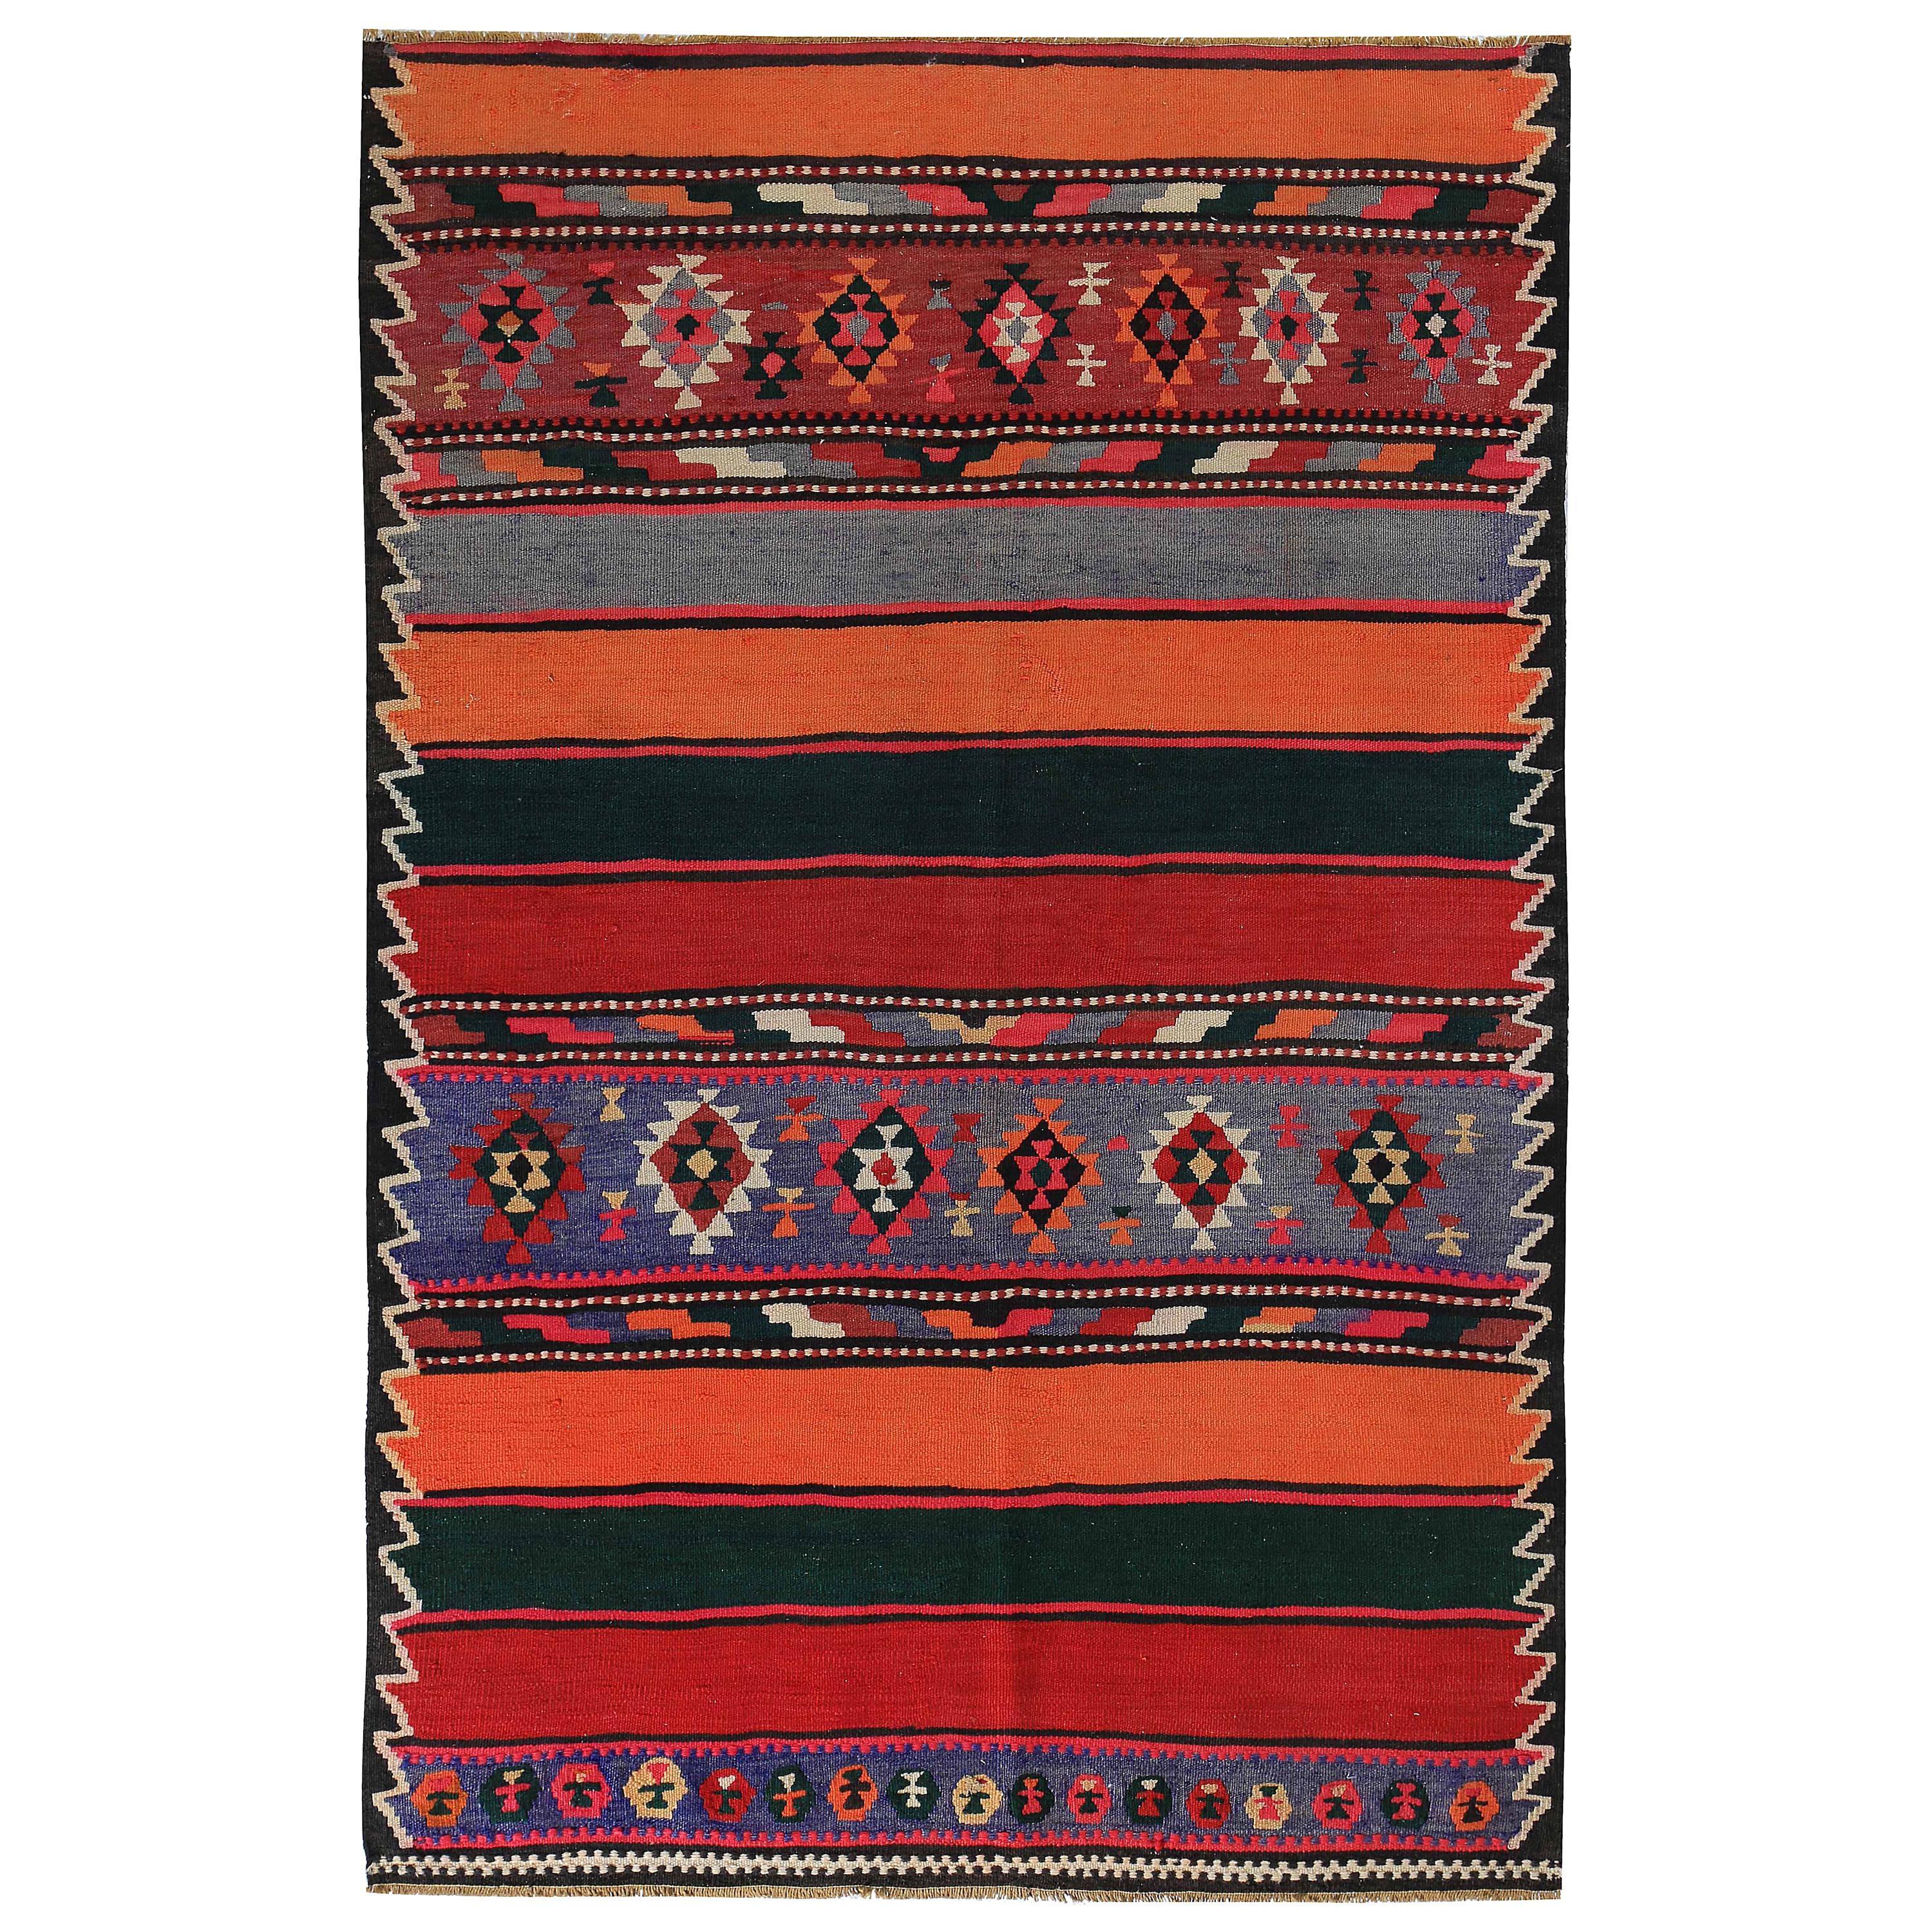 Türkischer Kelim-Teppich mit grünen und roten Streifen, dekoriert mit Stammesmedaillons